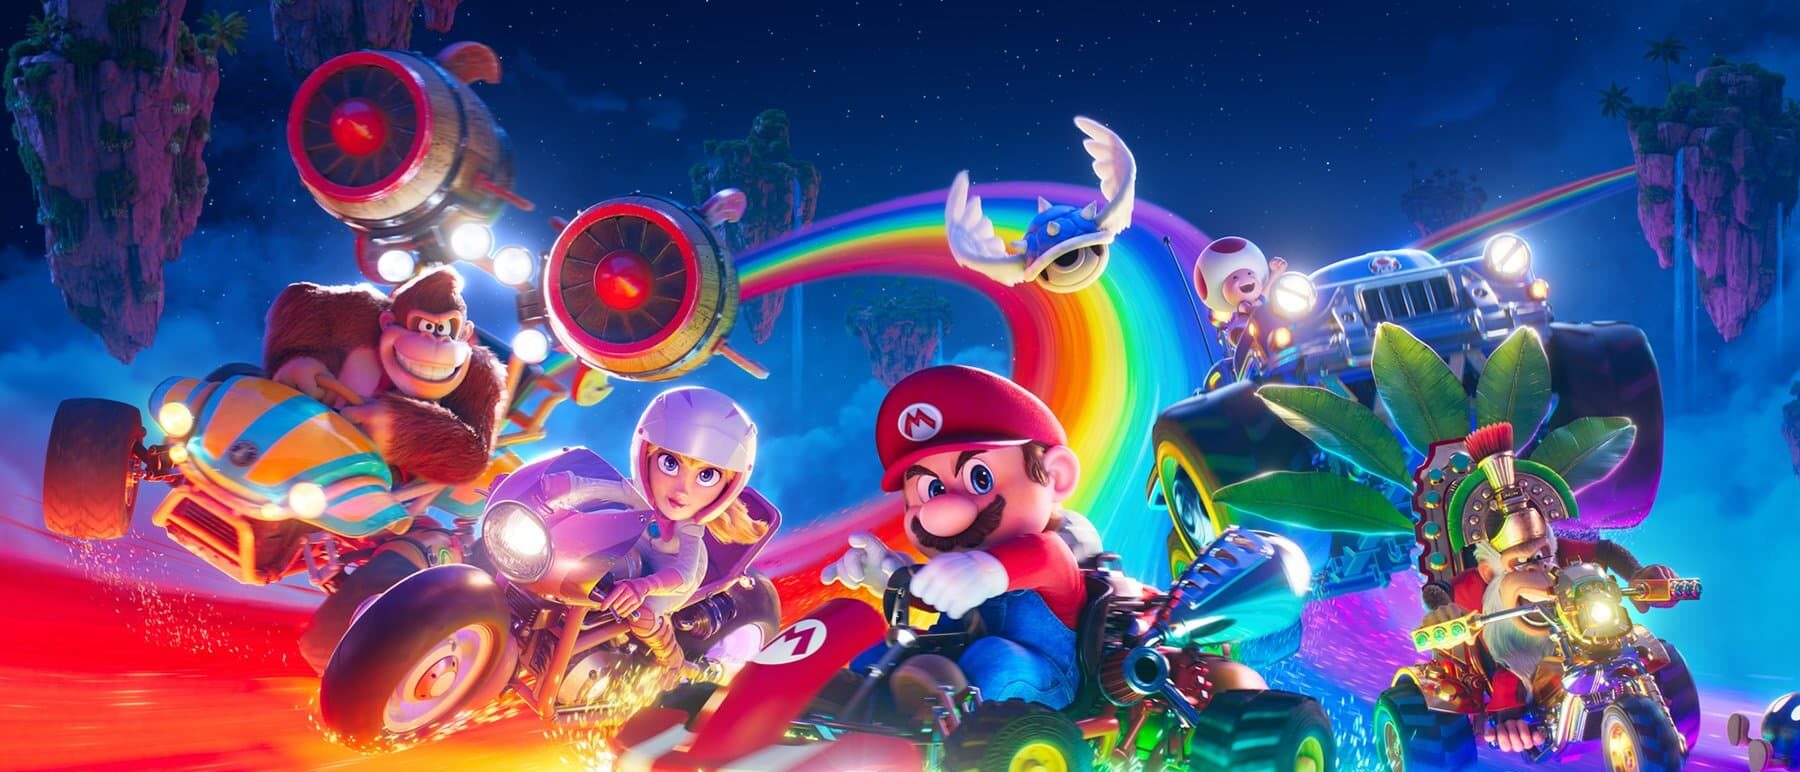 El próximo Nintendo Direct será sobre el último trailer de la película Super Mario Bros.